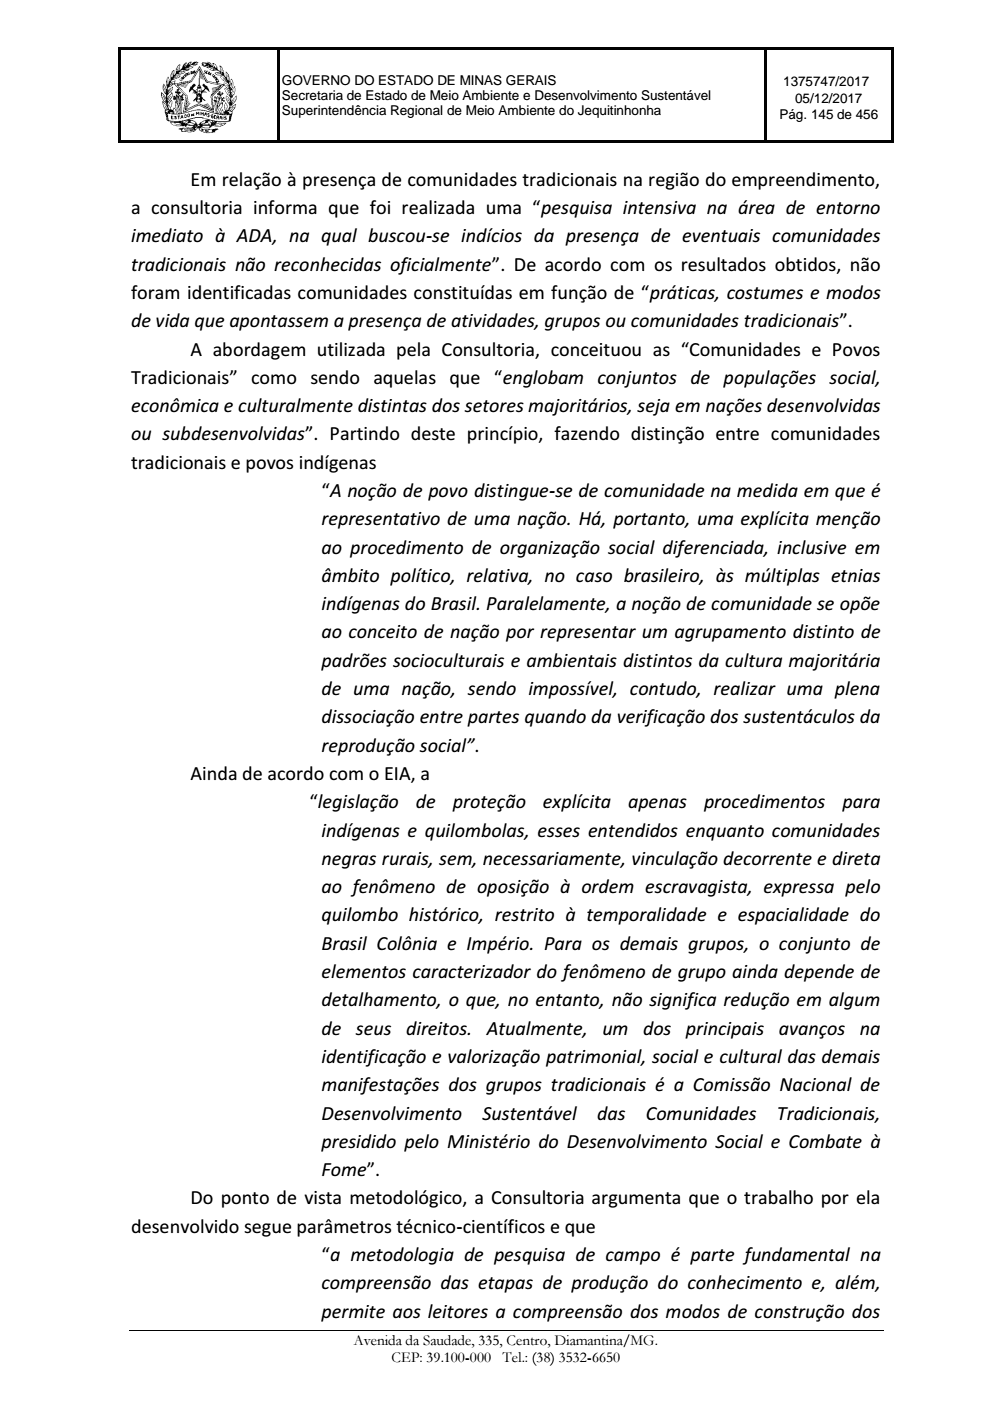 Page 145 from Parecer único da Secretaria de estado de Meio Ambiente e Desenvolvimento Sustentável (SEMAD)